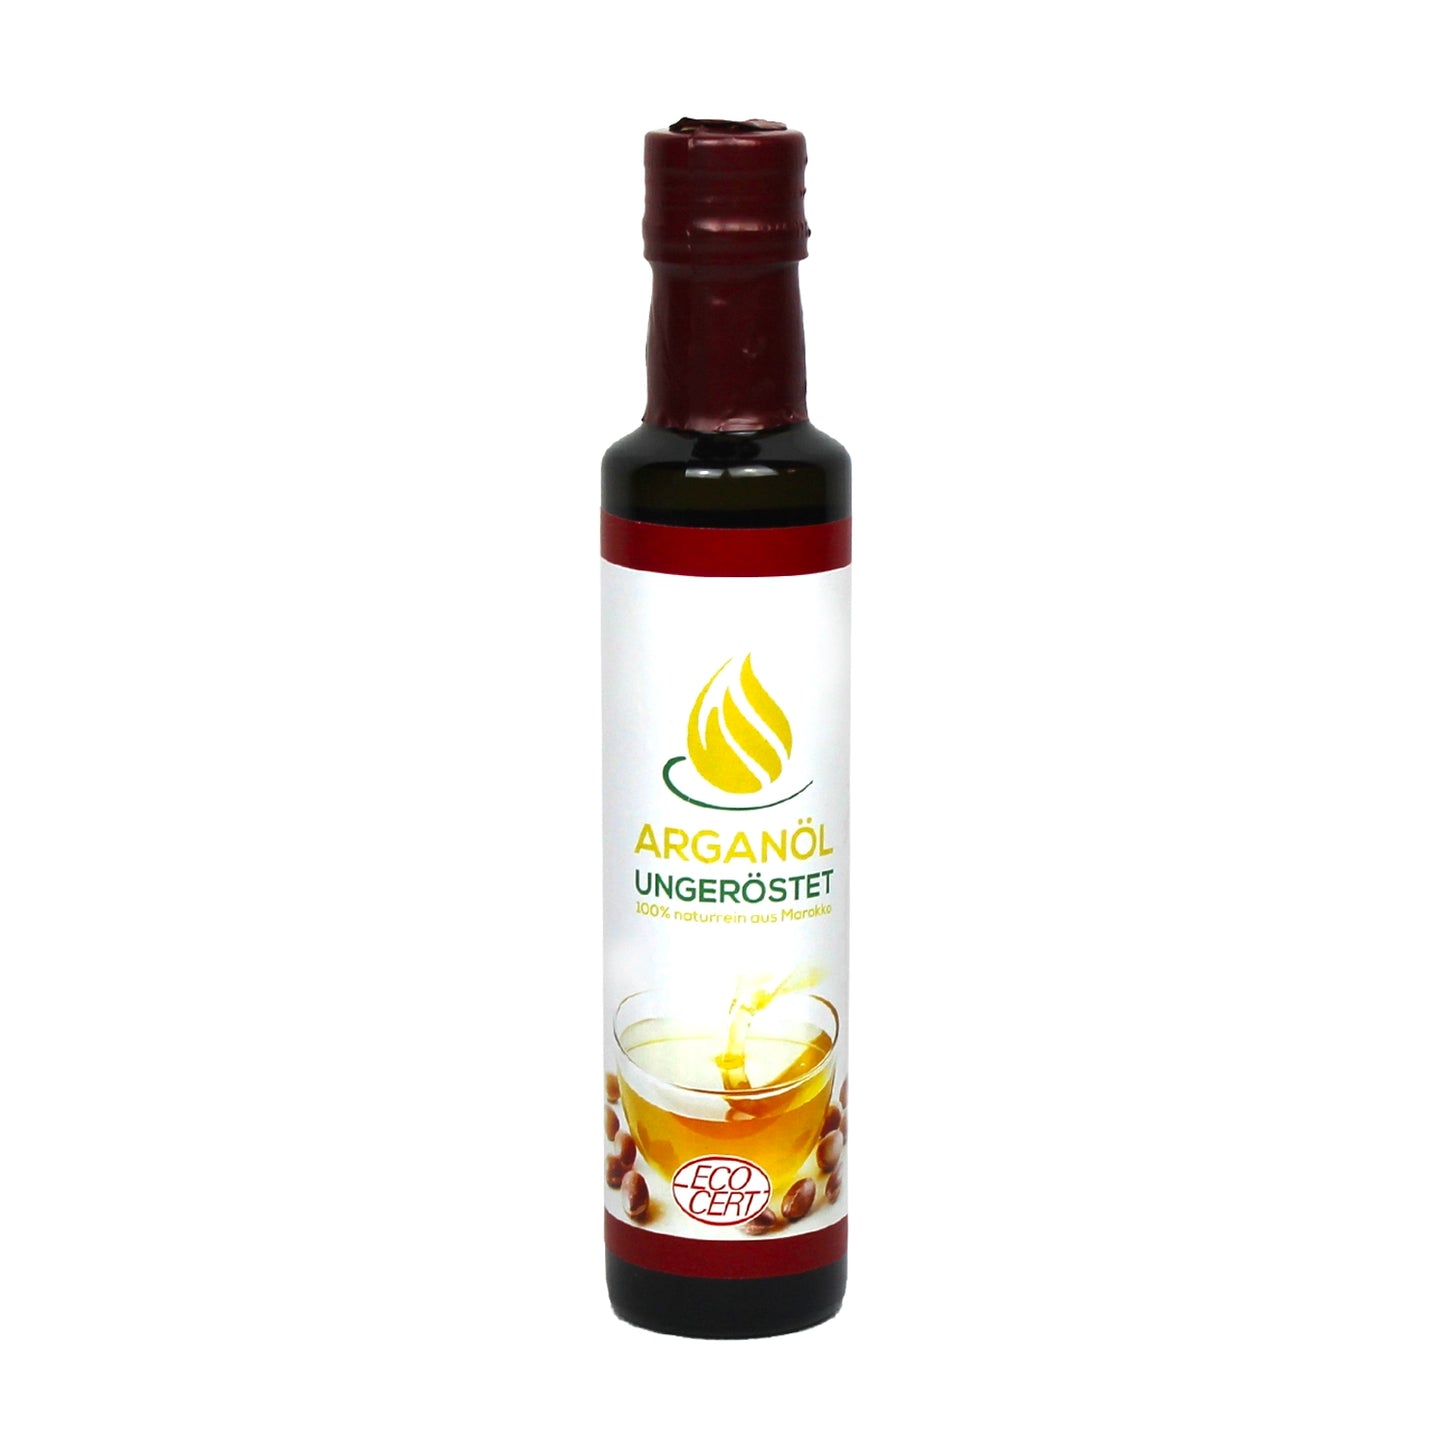 Arganöl, ungeröstet (mittelgroße Flasche, 250 ml)